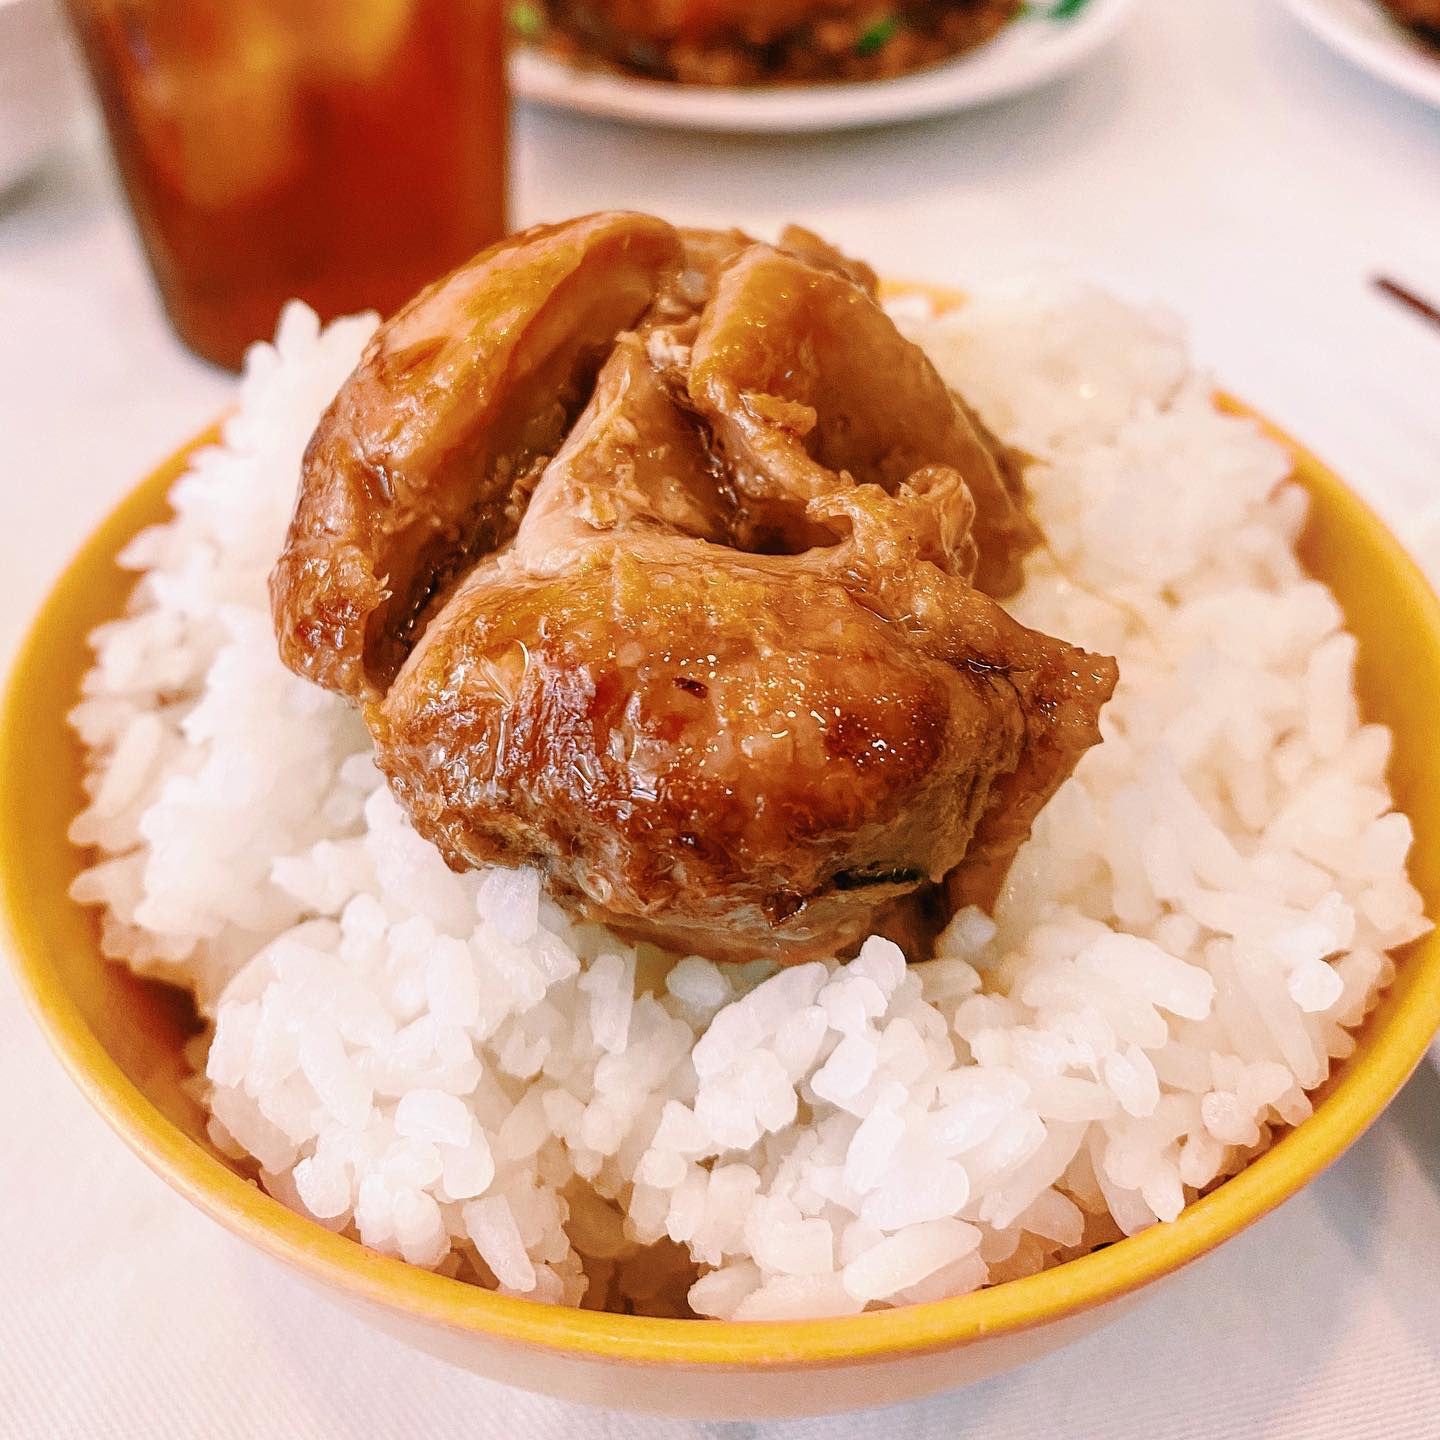 hillman restaurant - chicken in paper bag on rice